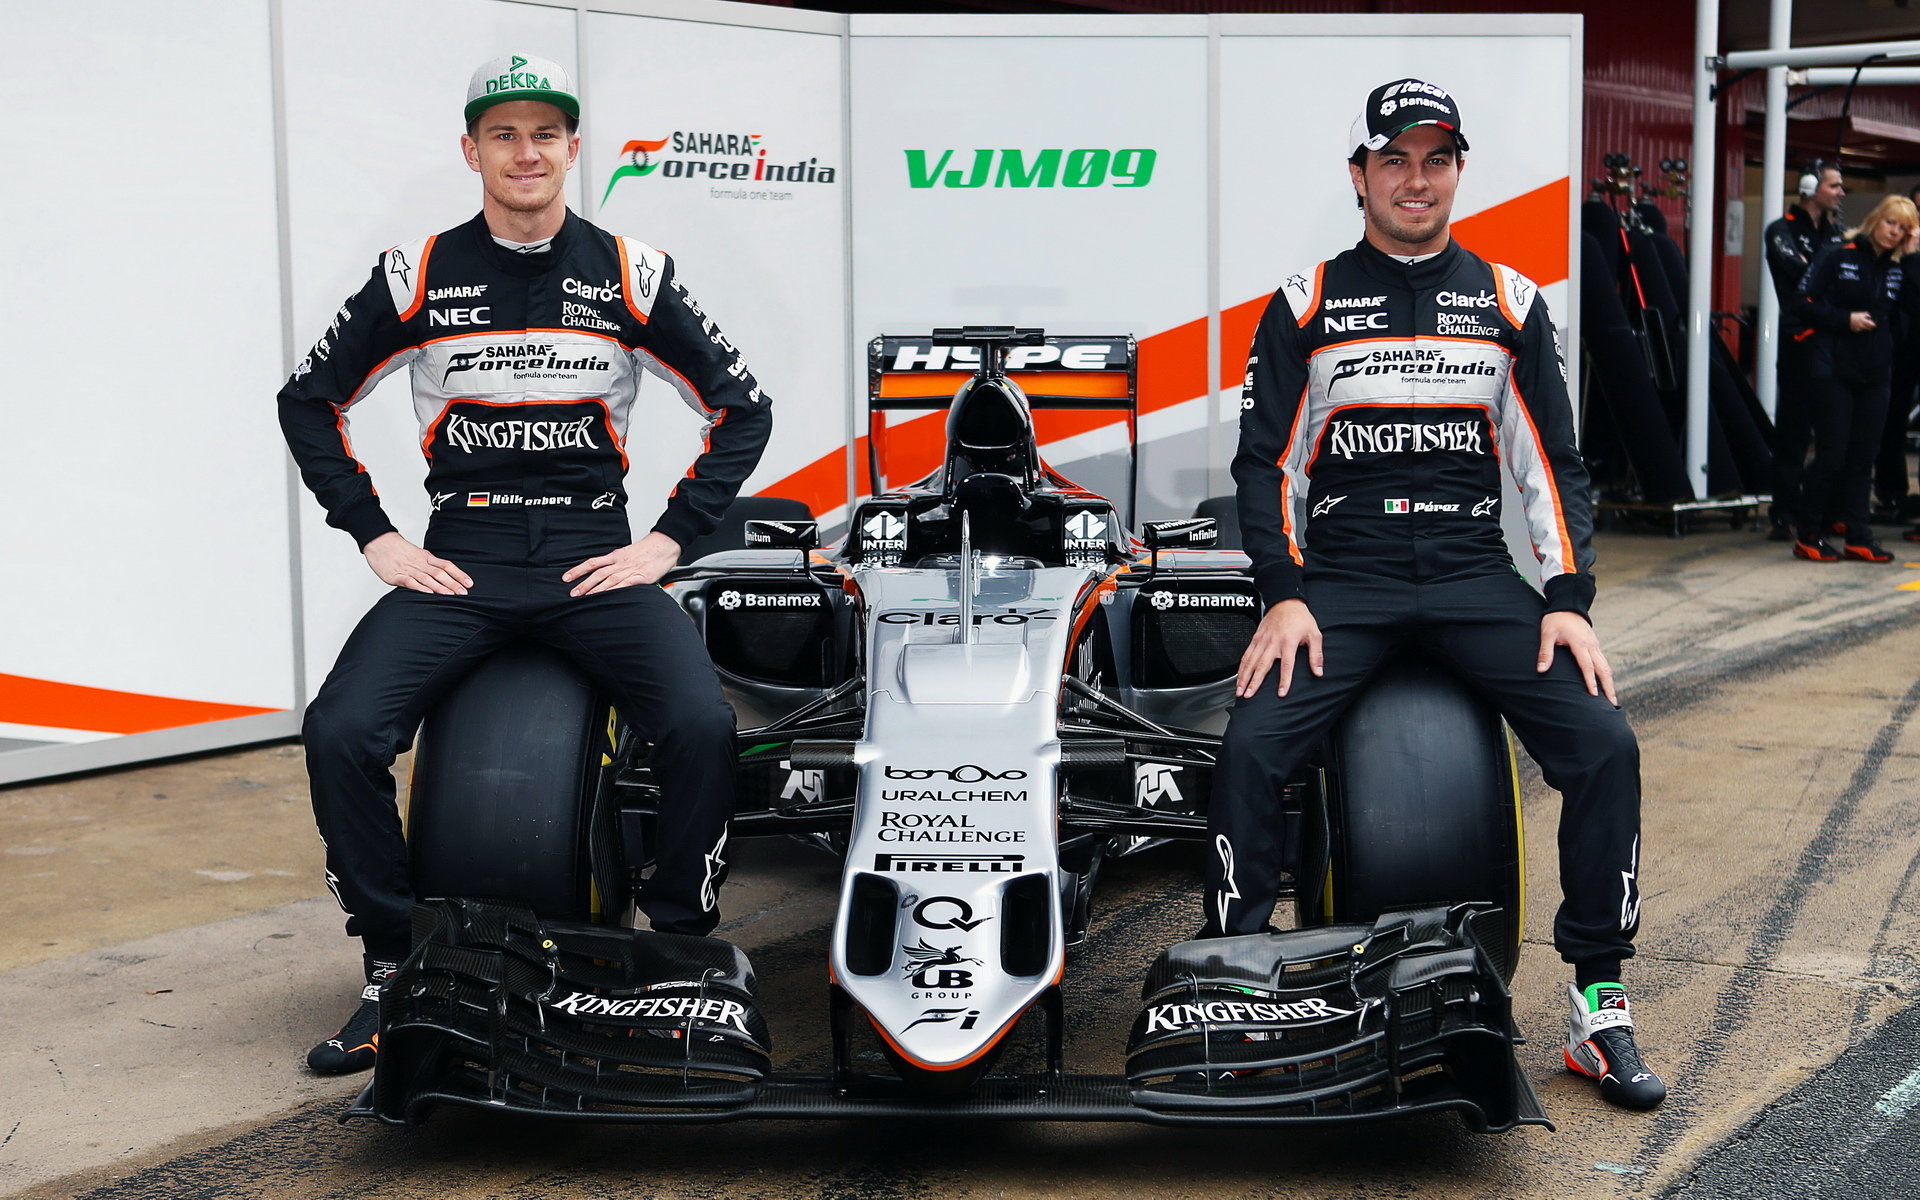 Nico Hülkenberg a Sergio Pérez představují nový vůz Force India VJM09 - Mercedes